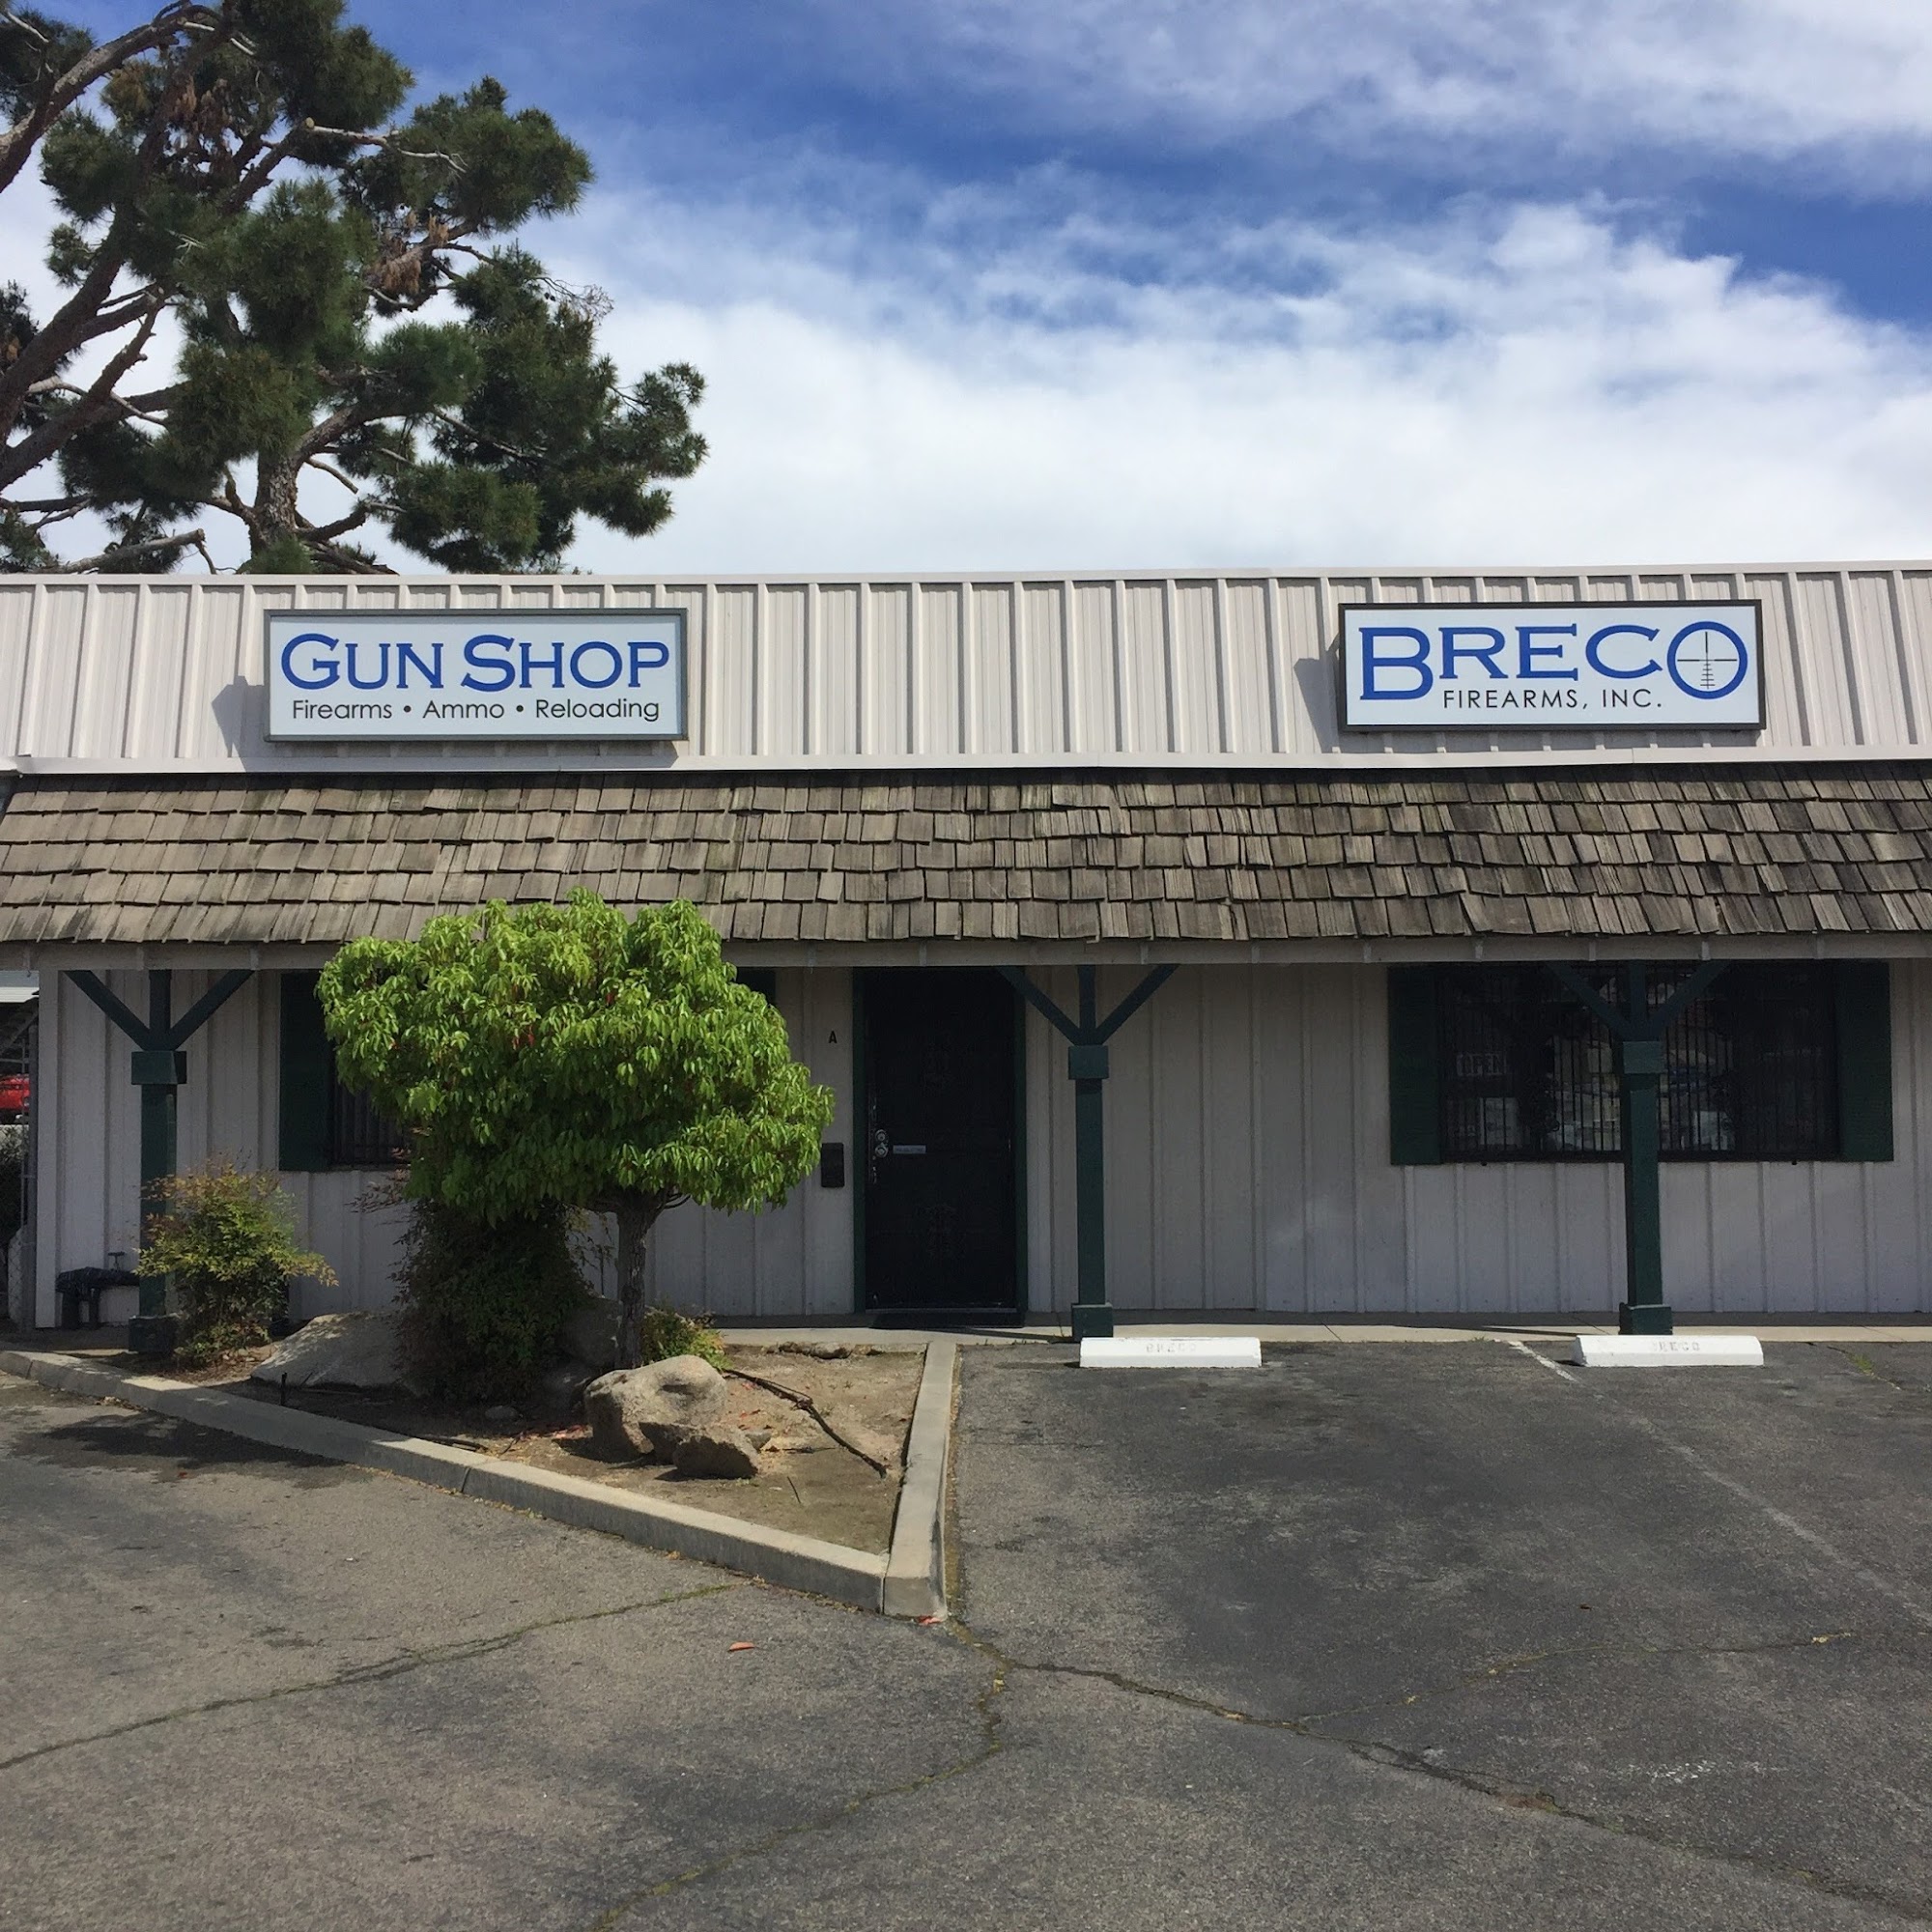 Breco Firearms, Inc